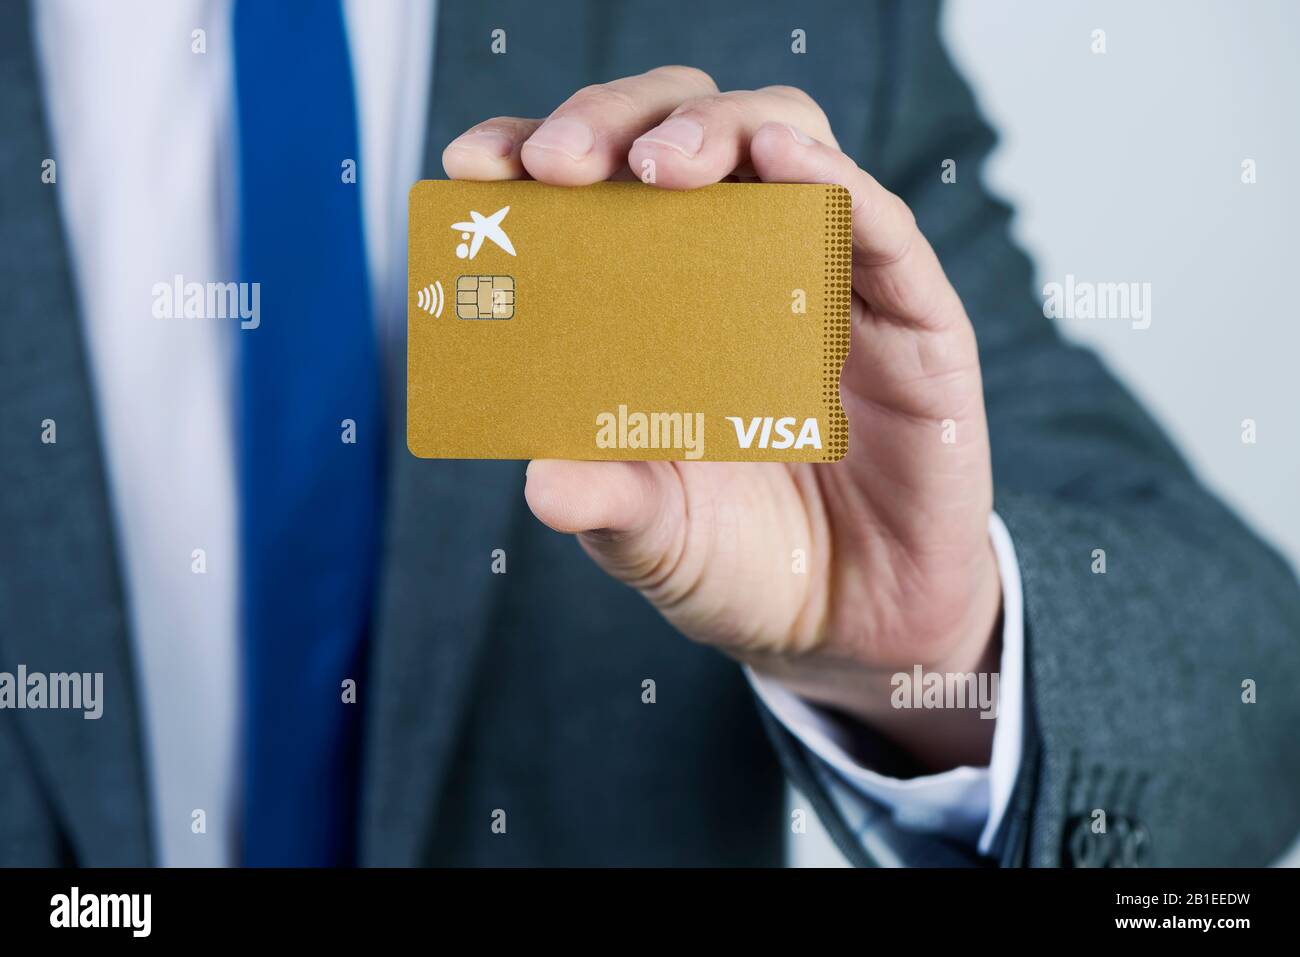 Barcelone, ESPAGNE - 13 FÉVRIER 2020: Un homme d'affaires, dans un élégant  costume gris, montre une carte de crédit Visa Gold de CaixaBank Photo Stock  - Alamy